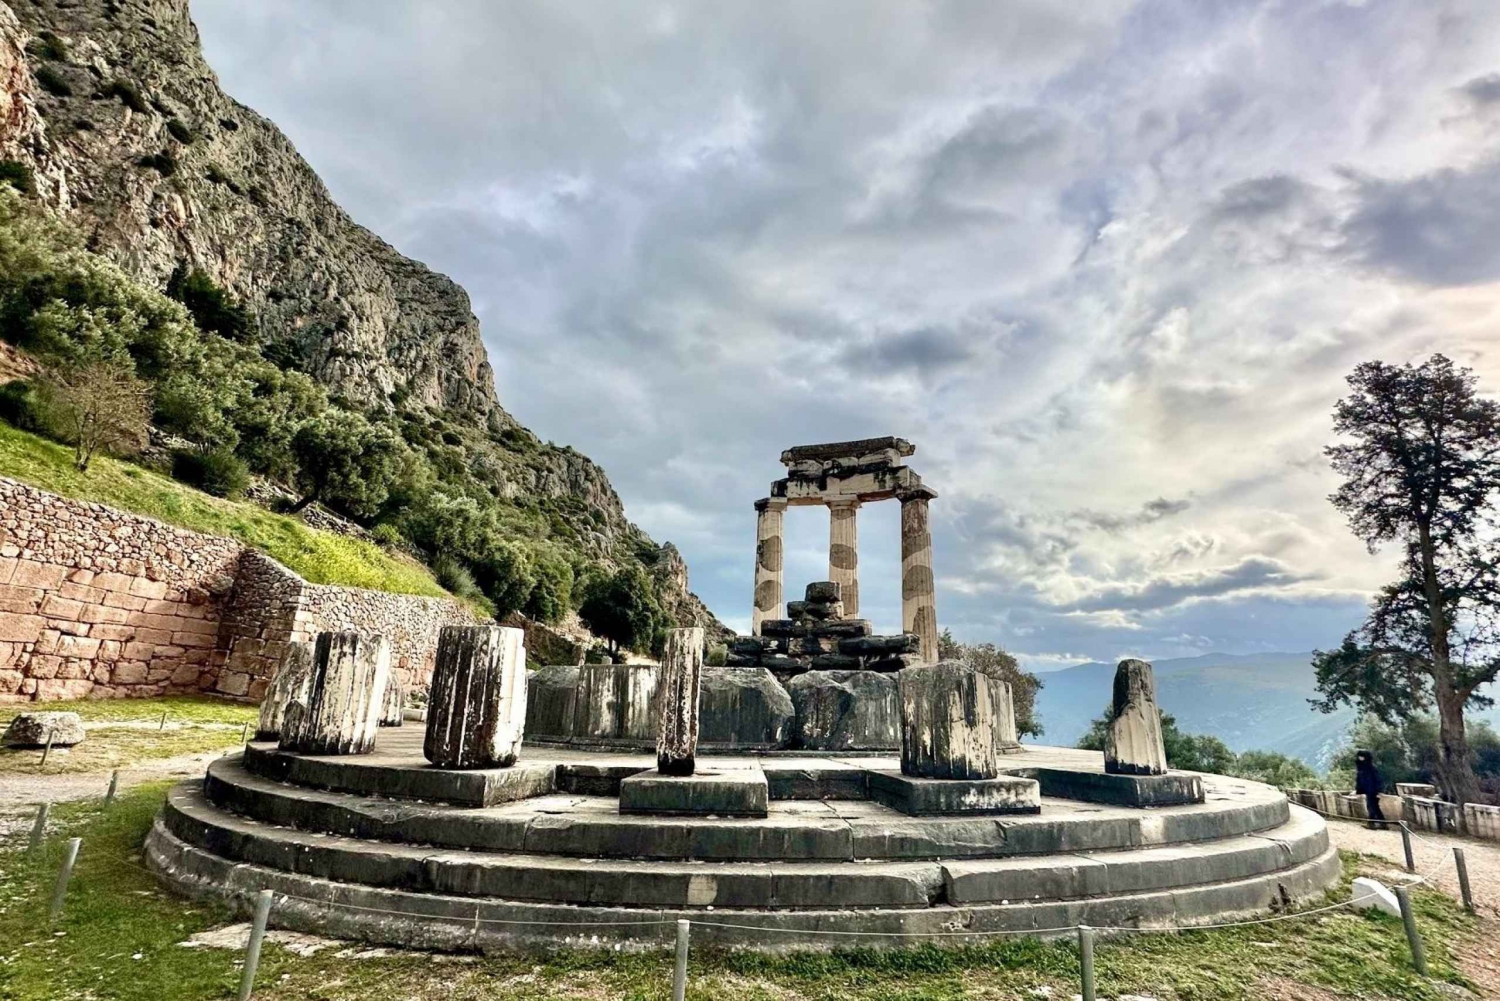 Delphi Nabel der Welt Hosios Loukas Ganztagestour private Tour